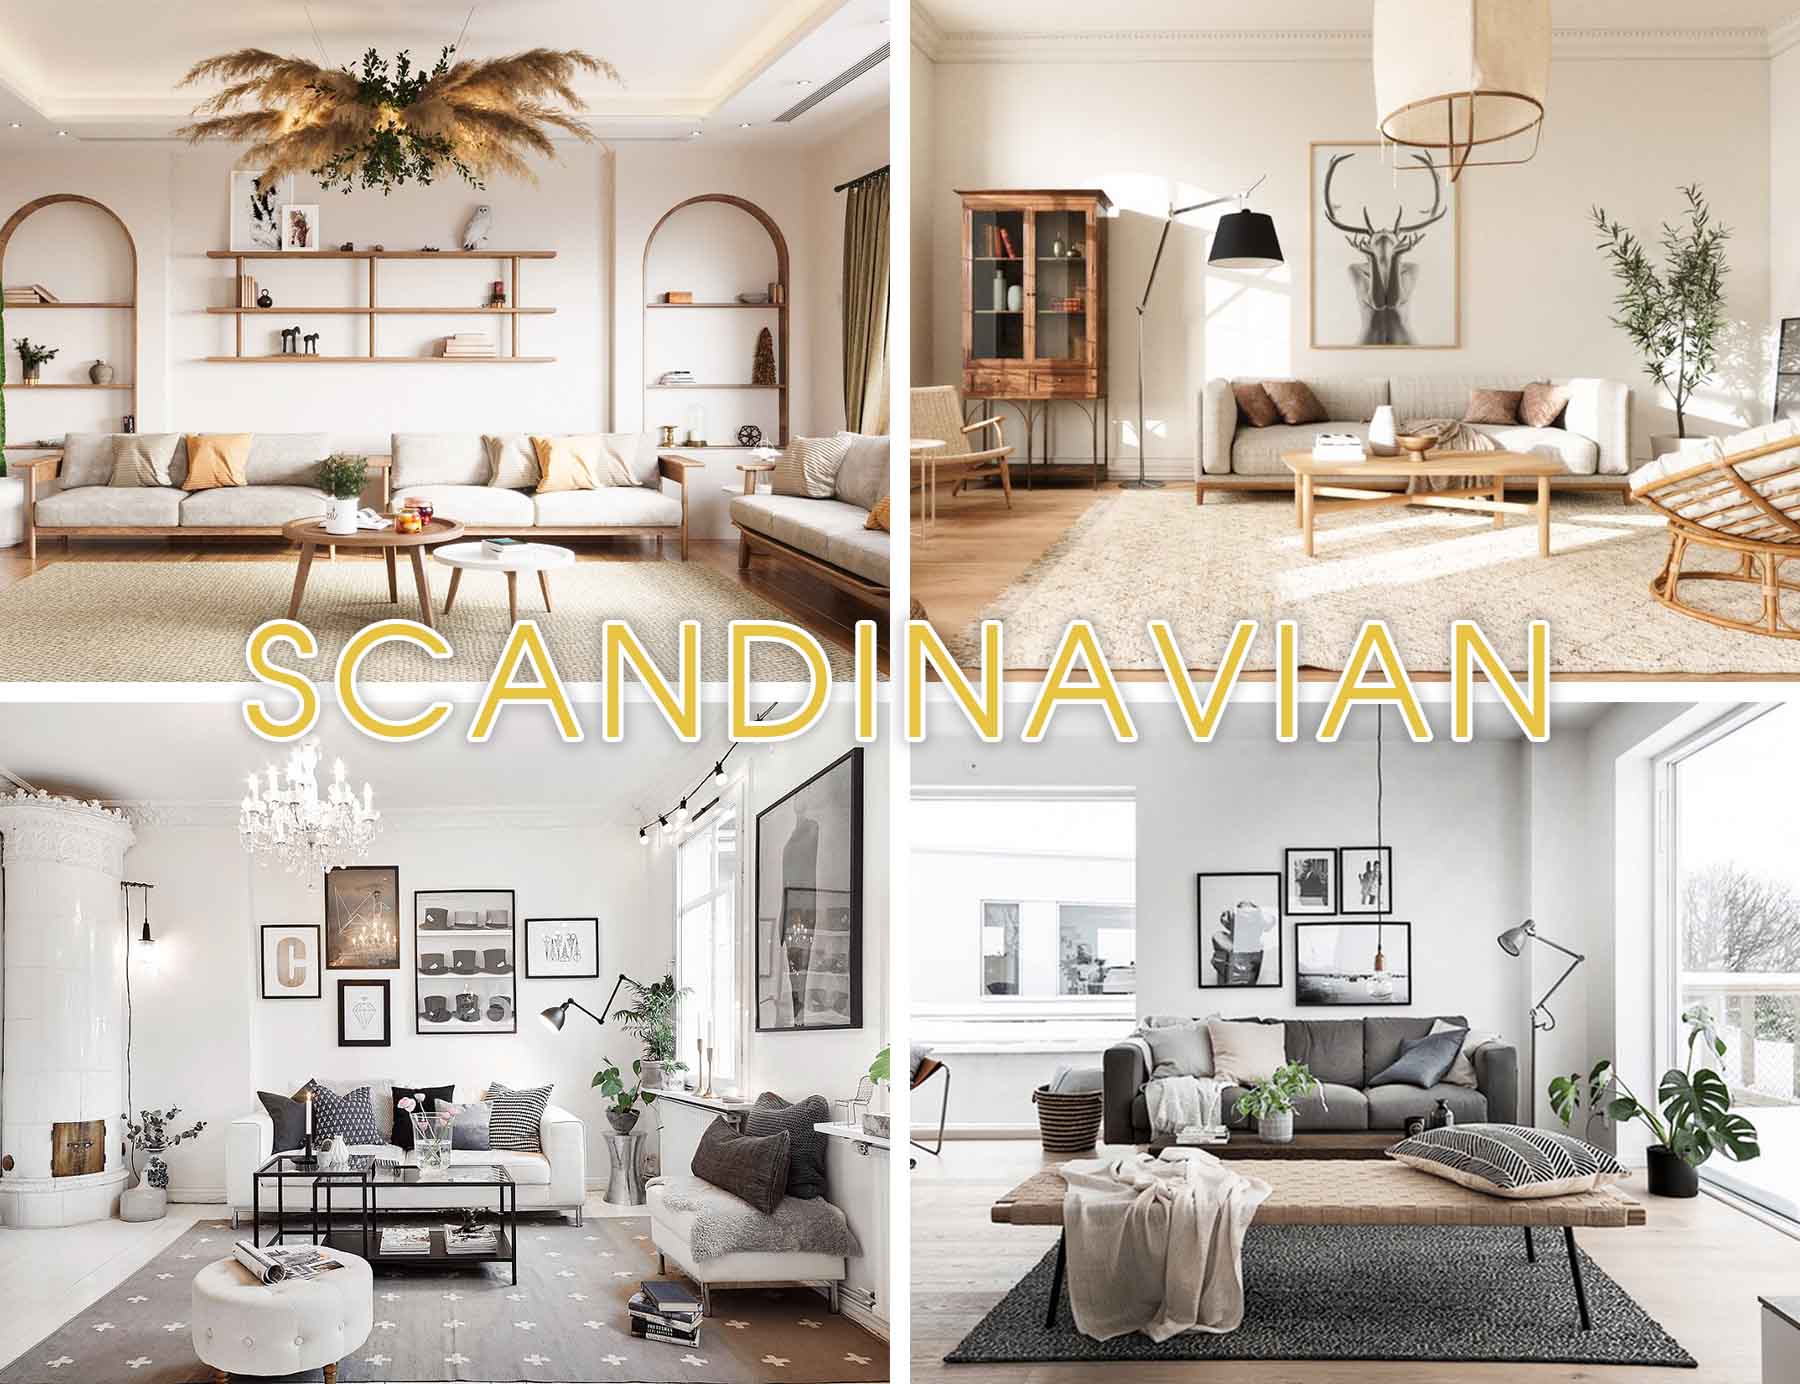 Thiết kế nội thất phòng khách theo phong cách Bắc Âu (Scandinavian)